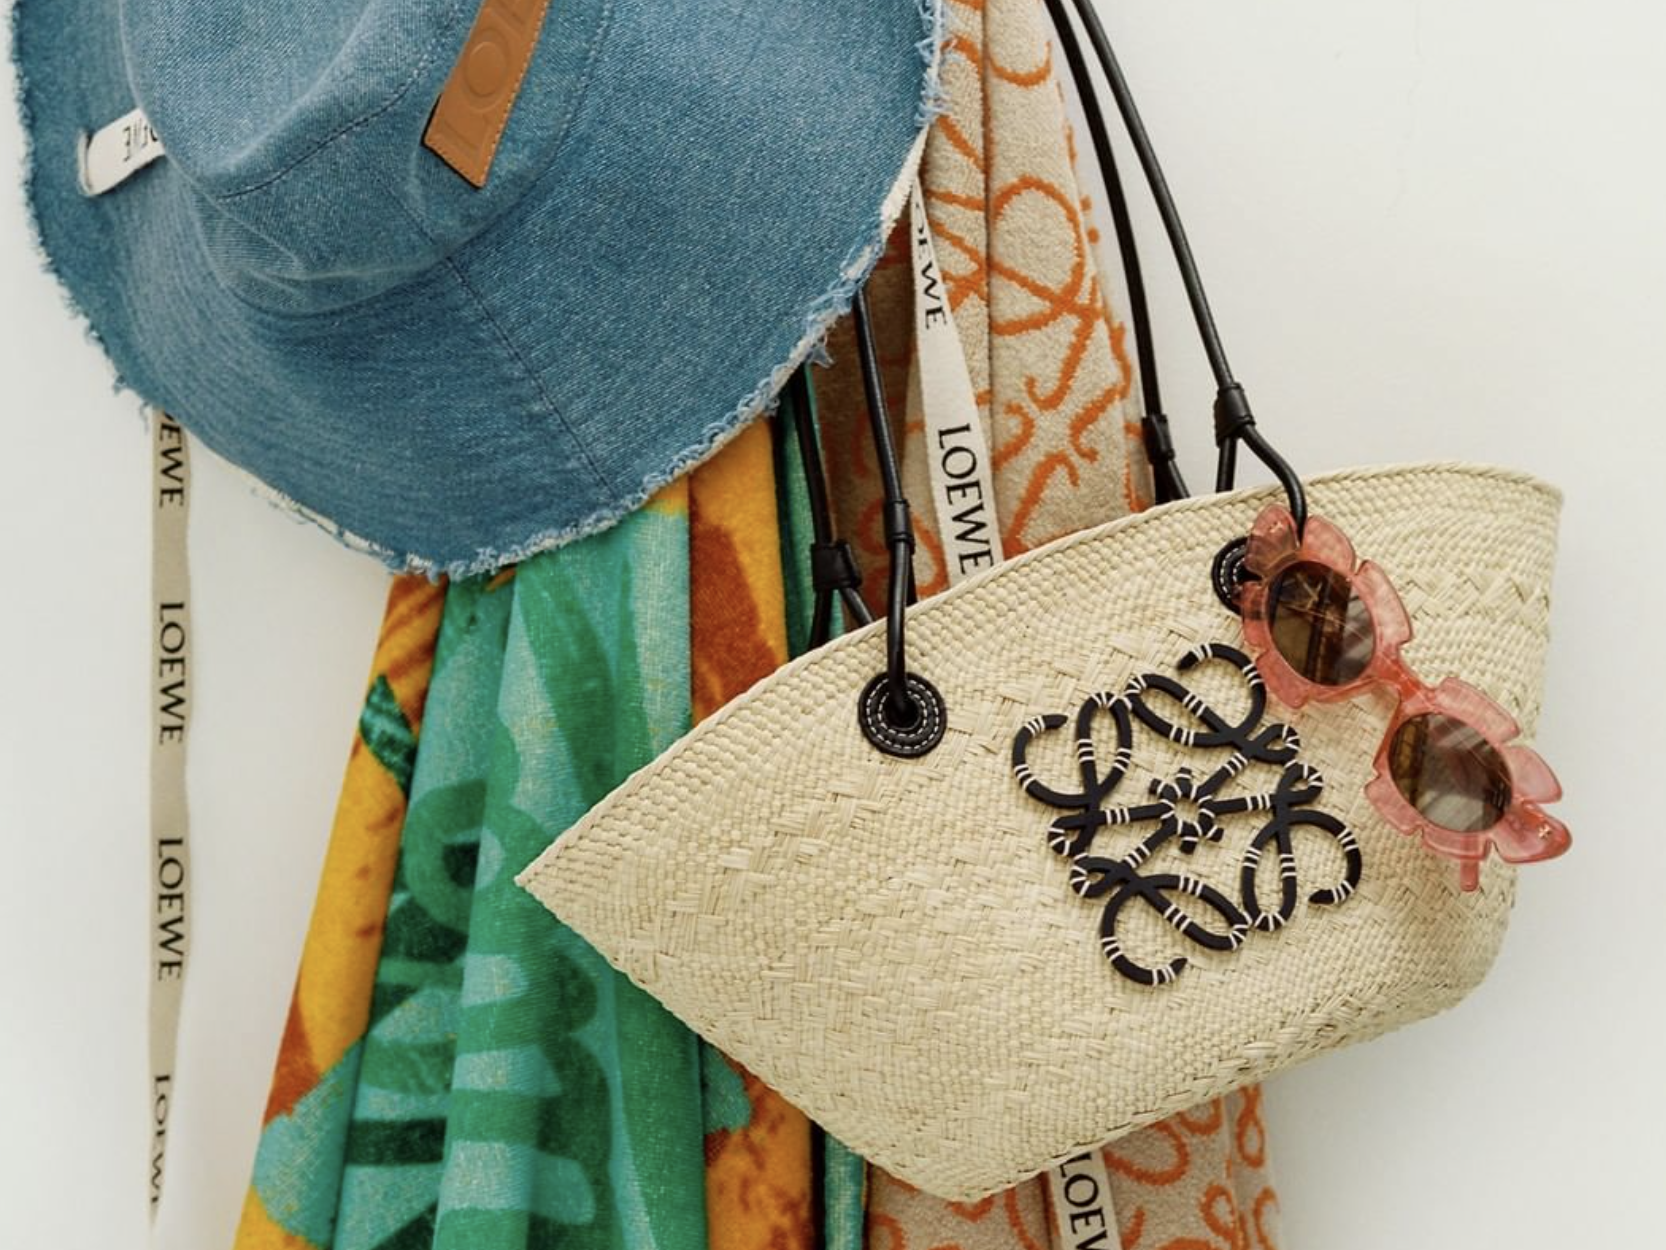 Las prendas bolsos de Loewe Ibiza para un look de playa ideal